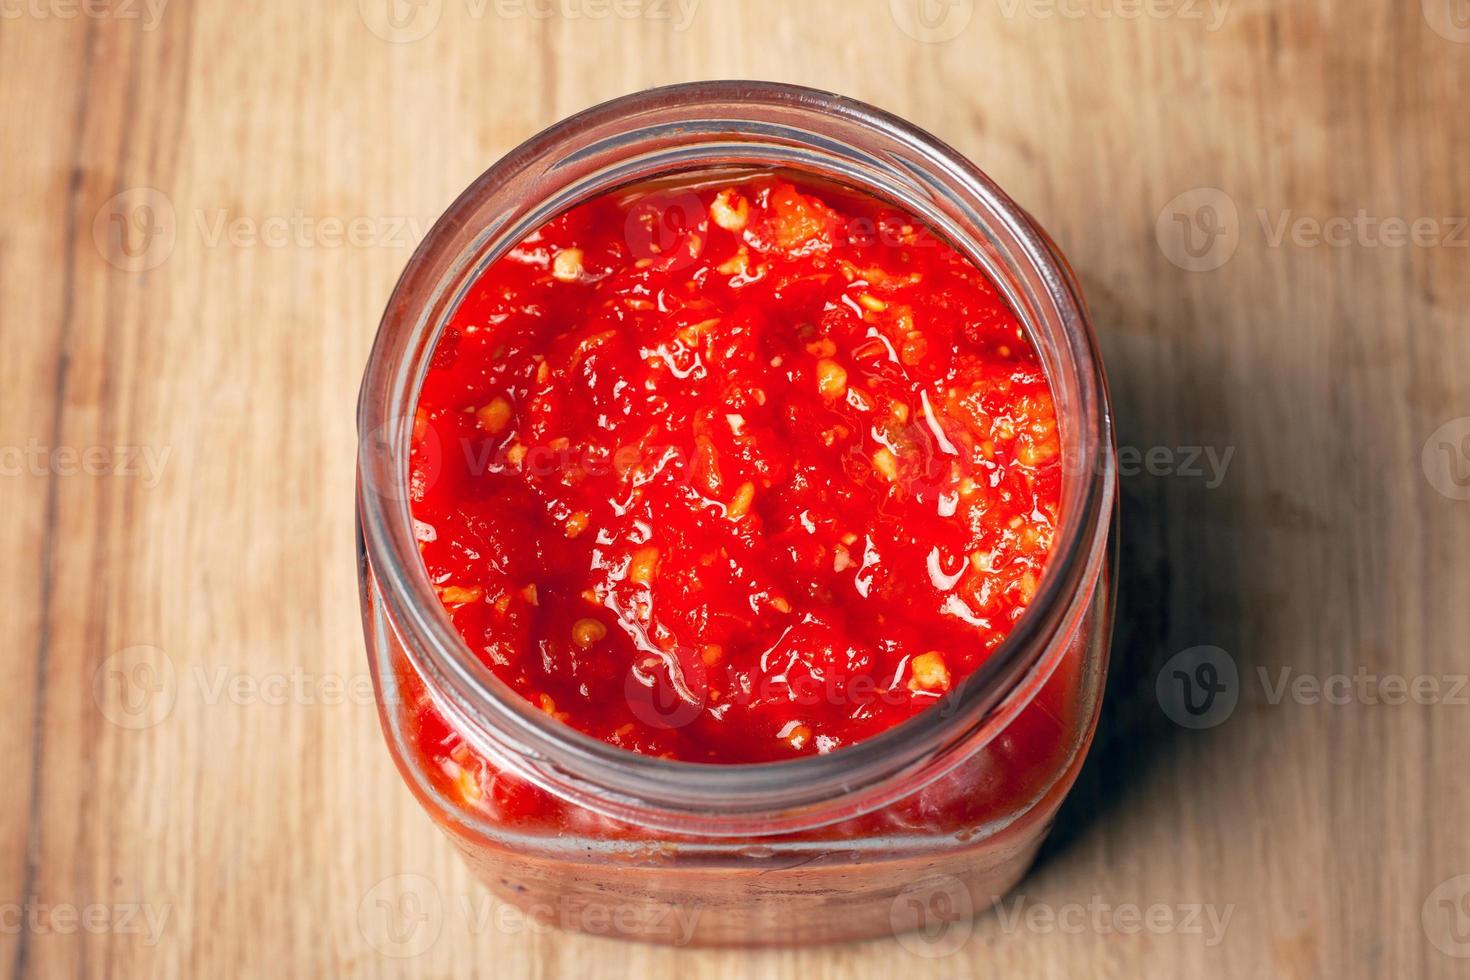 jarra com pimenta vermelha e molho de tomate foto